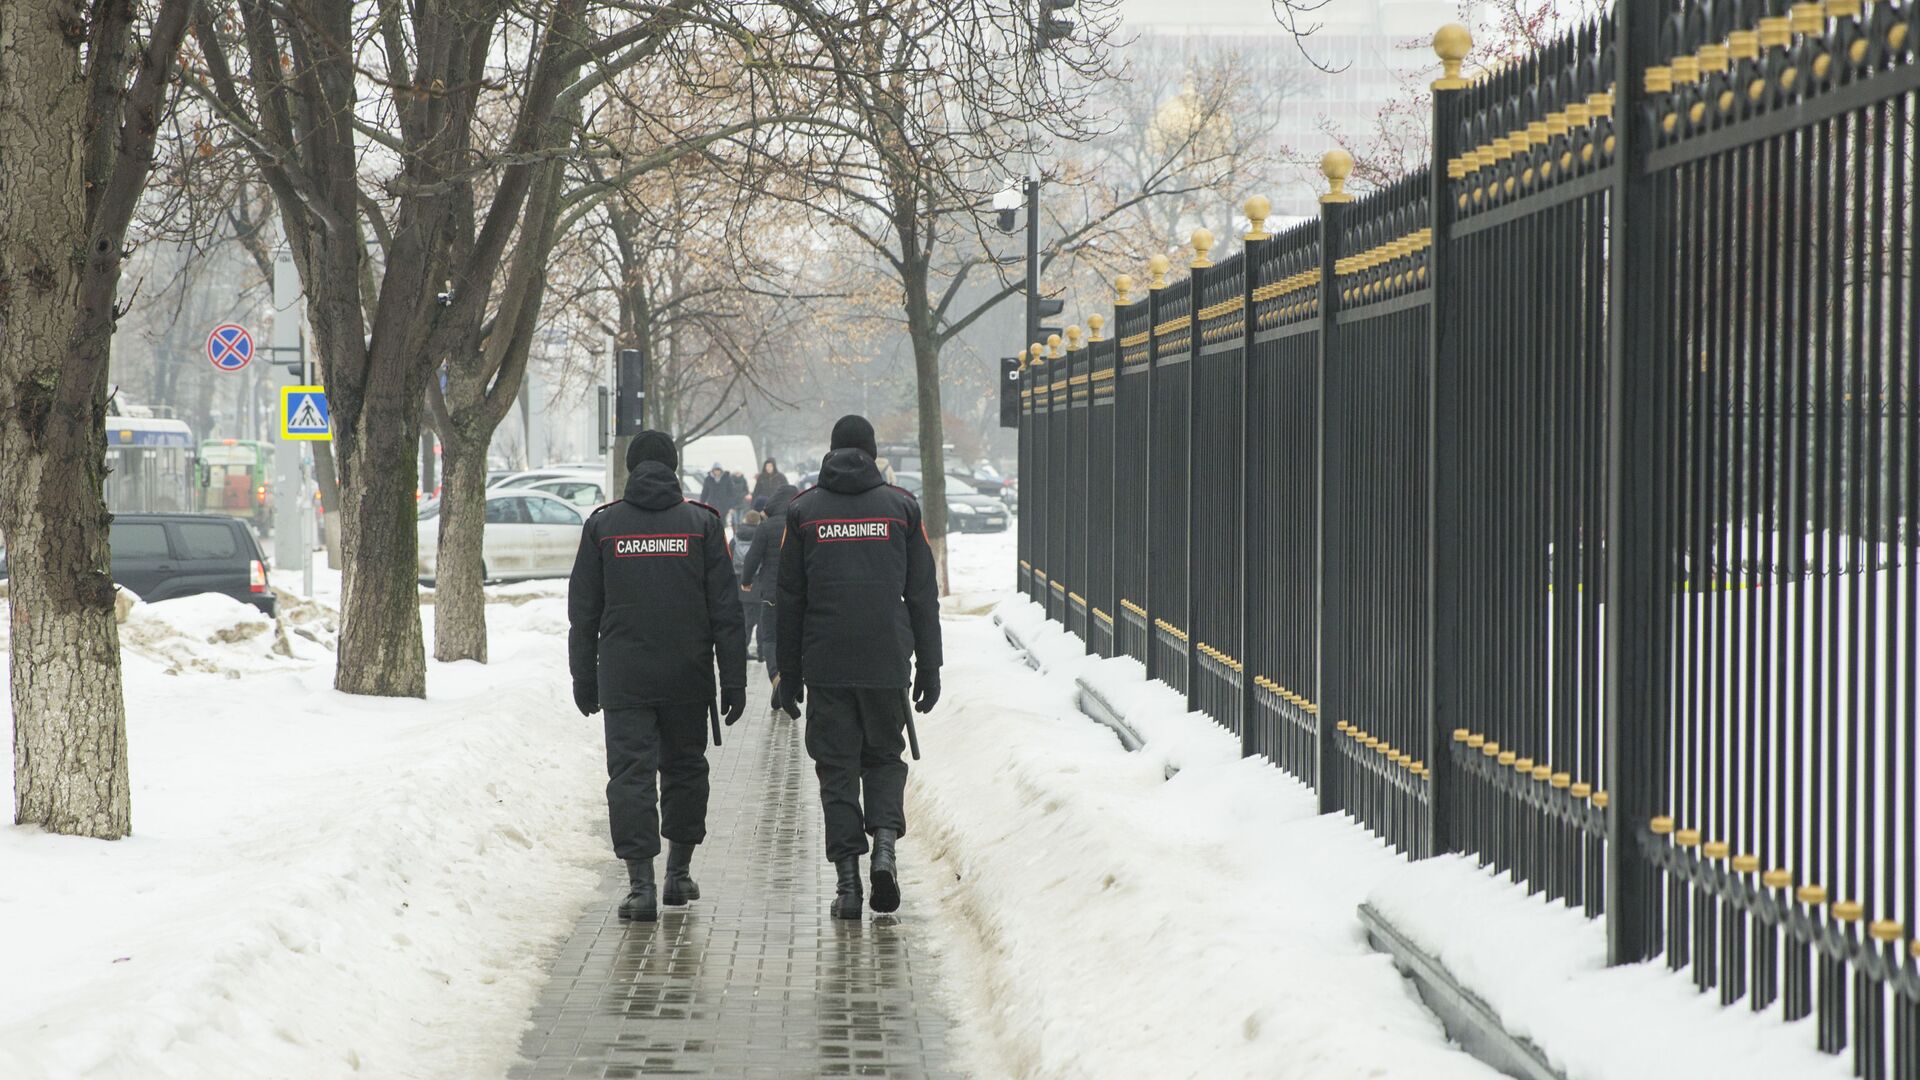 Карабинеры патрулируют улицы Кишинева во время пандемии - Sputnik Молдова, 1920, 20.01.2022